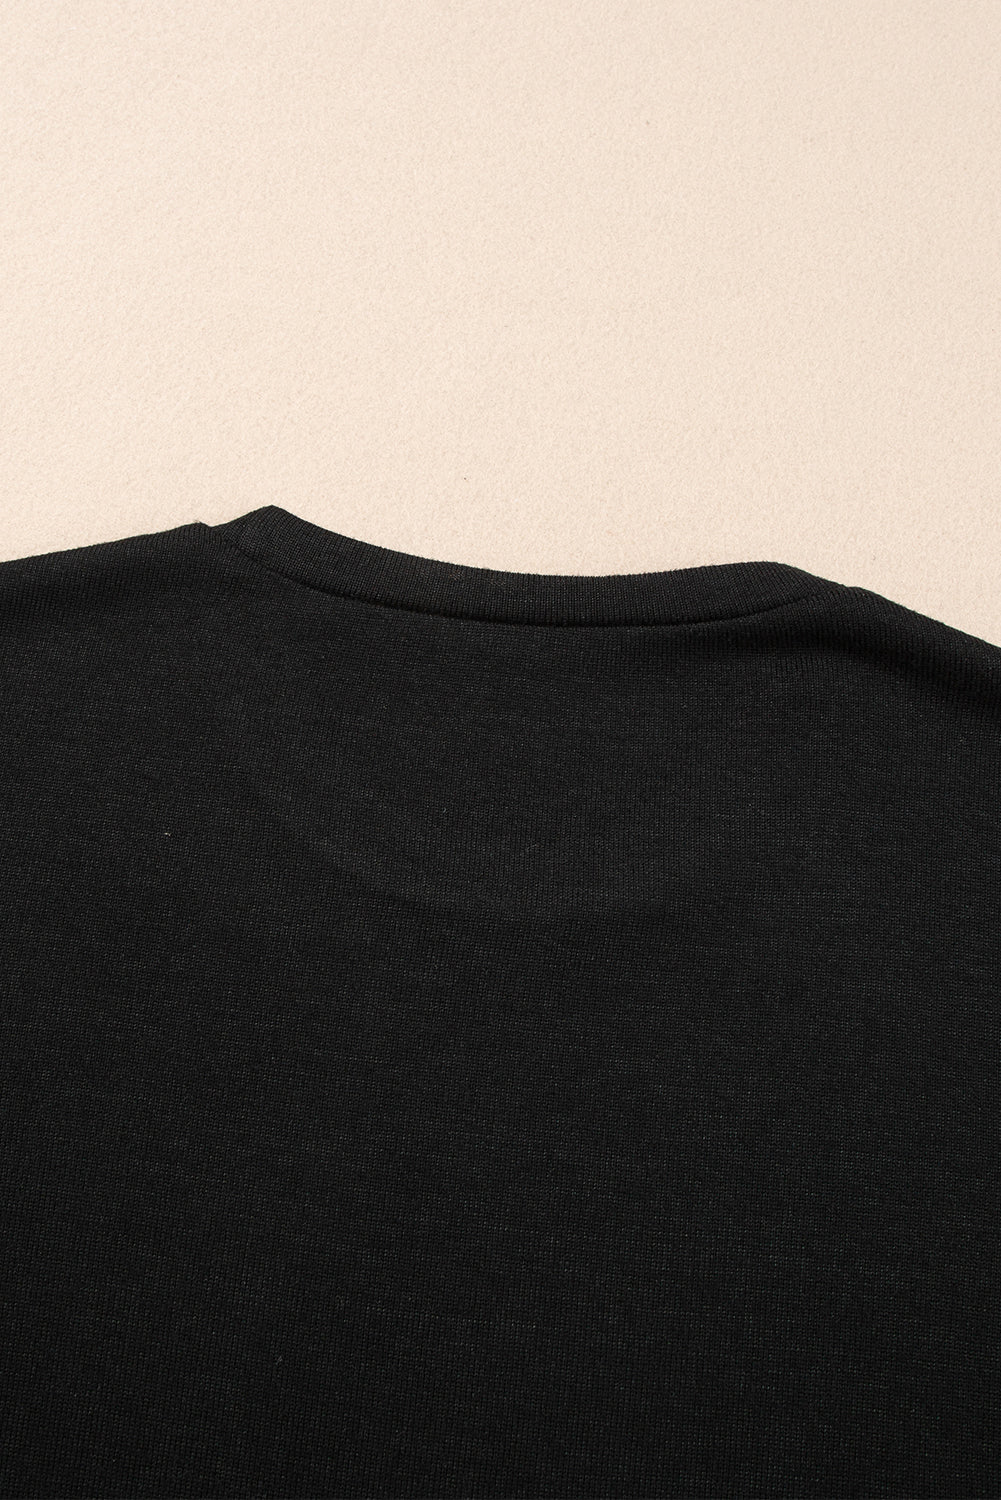 T-shirt girocollo con maniche a coste nere